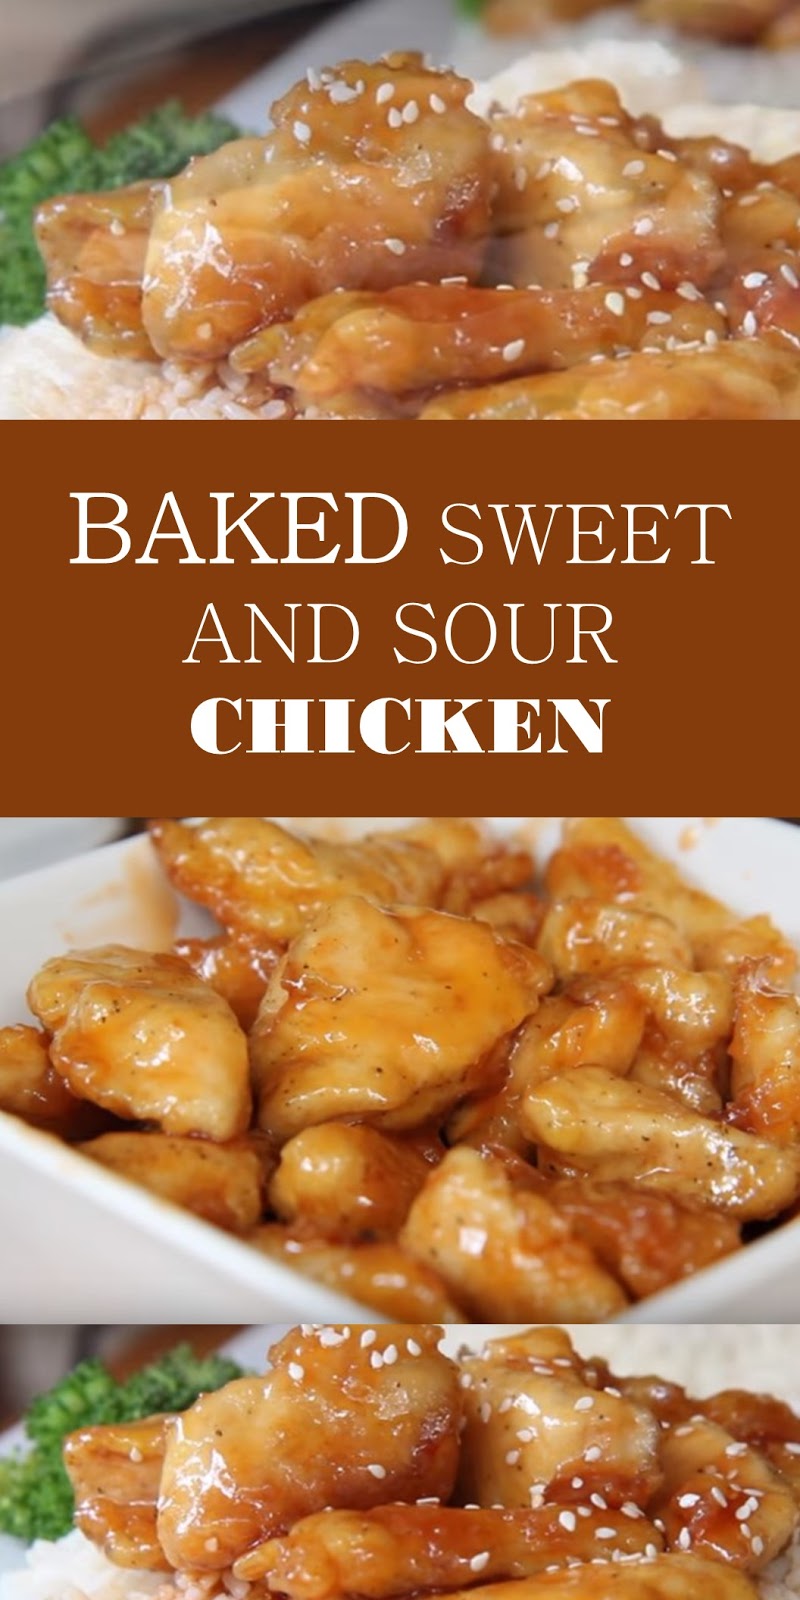 #chicken #baked #recipes